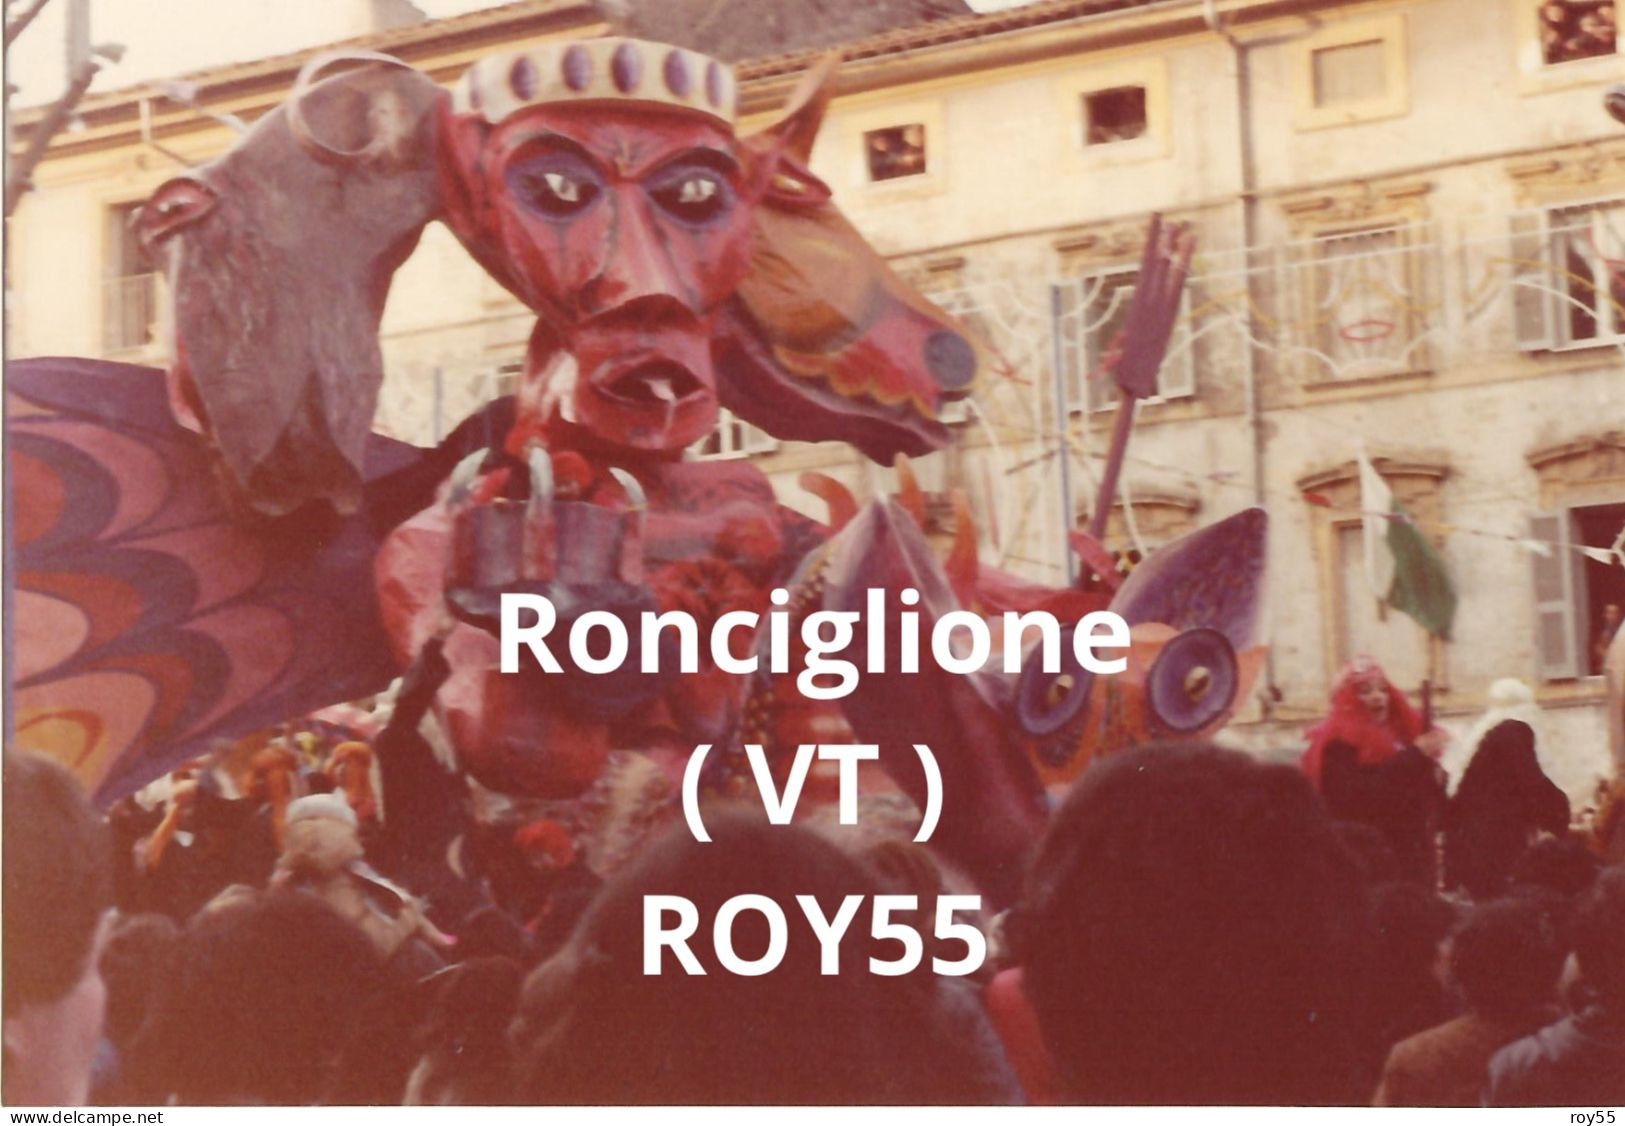 Lazio Viterbo Ronciglione Carnevale 1981 Carro Allegorico (fotografia) - Carnevale